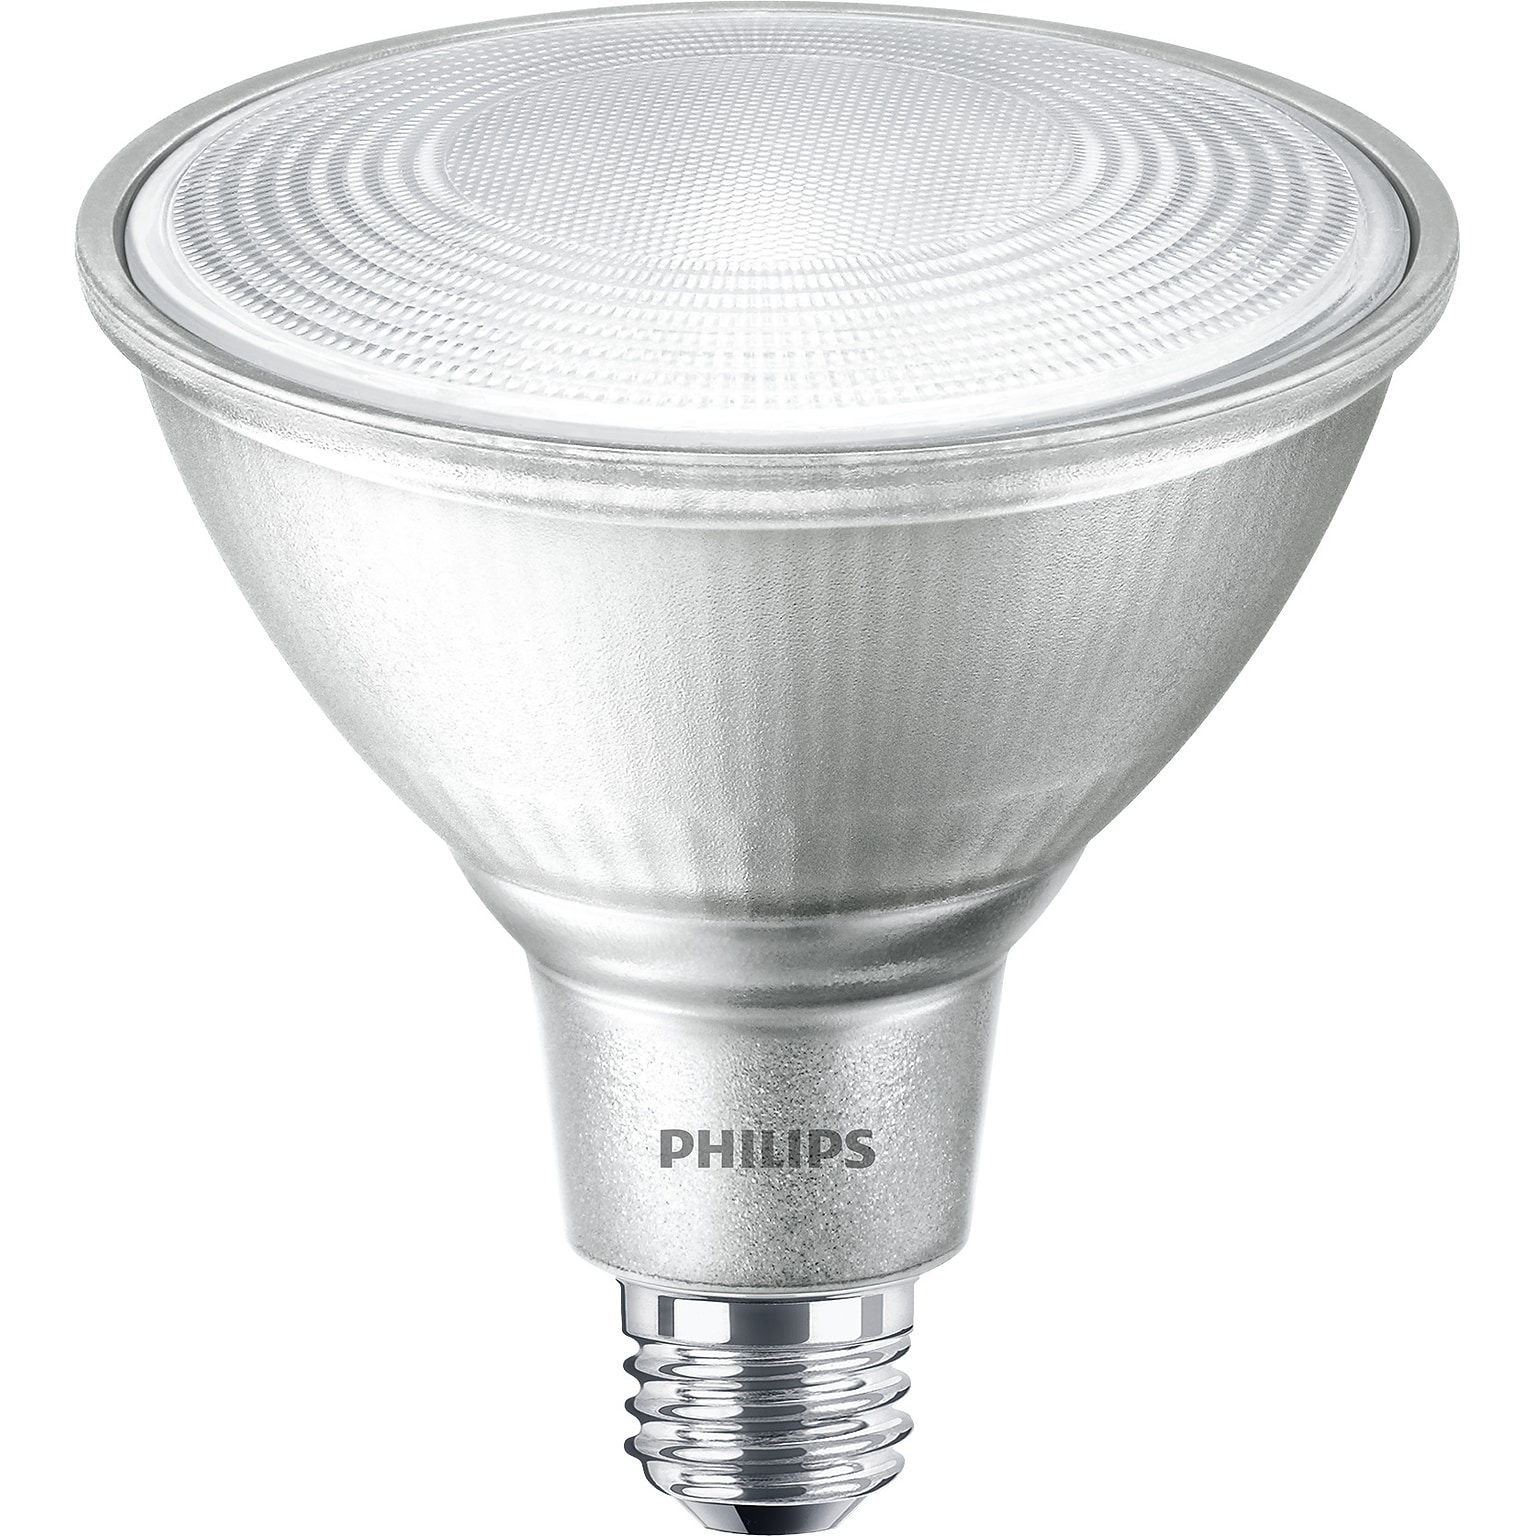 Philips LED PAR38 14 Watt Bulb, Pack of 6 (529602)